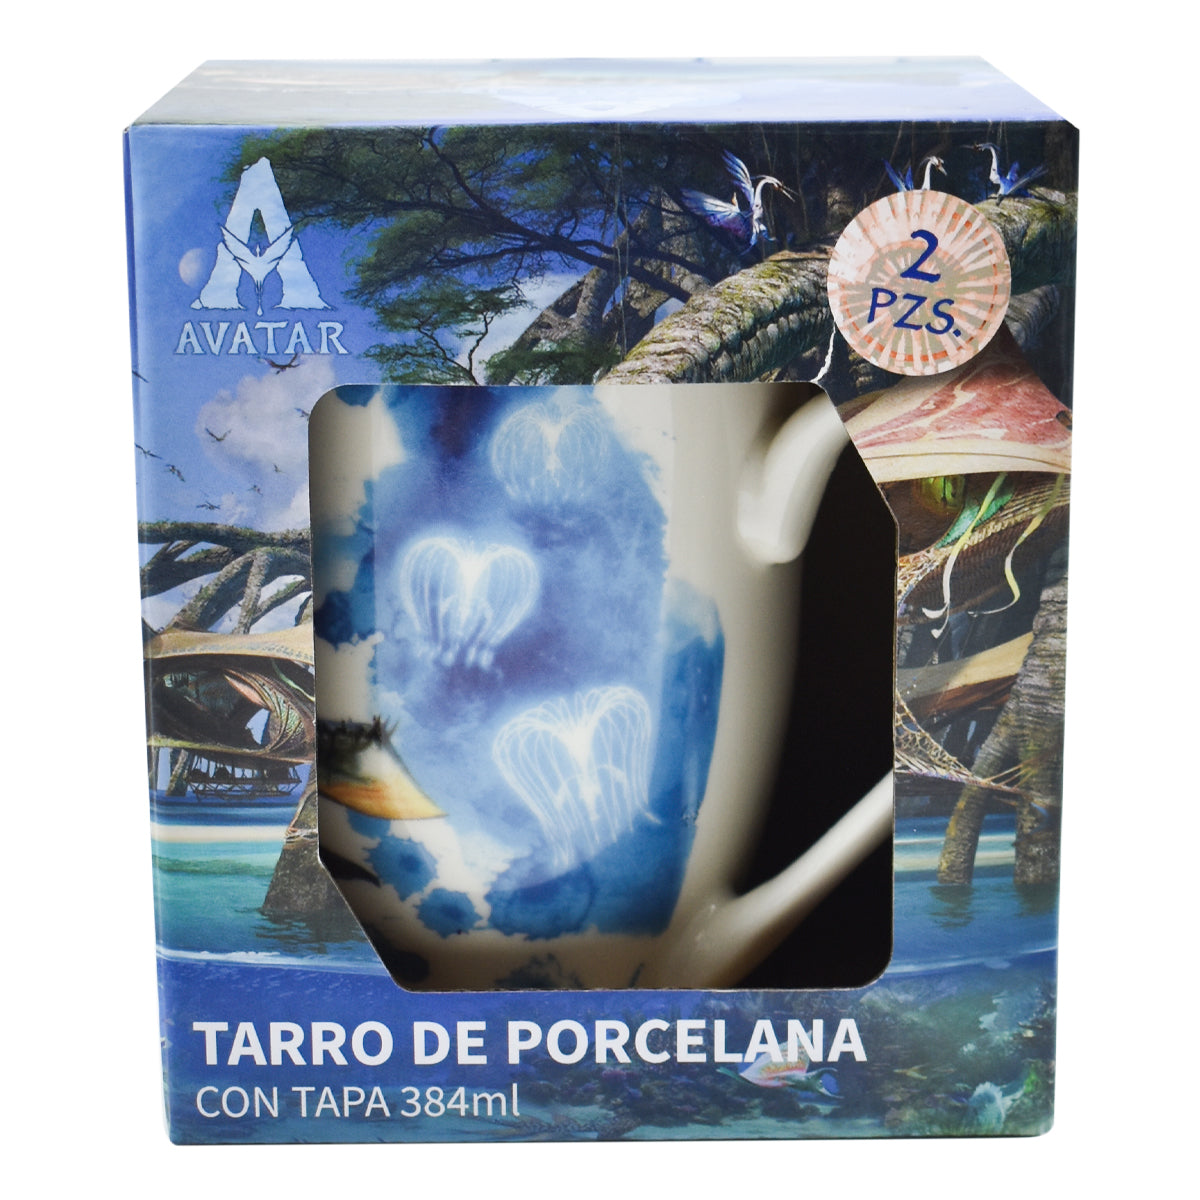 Tarro para Café de Porcelana con Tapa, Avatar: El Sentido del Agua